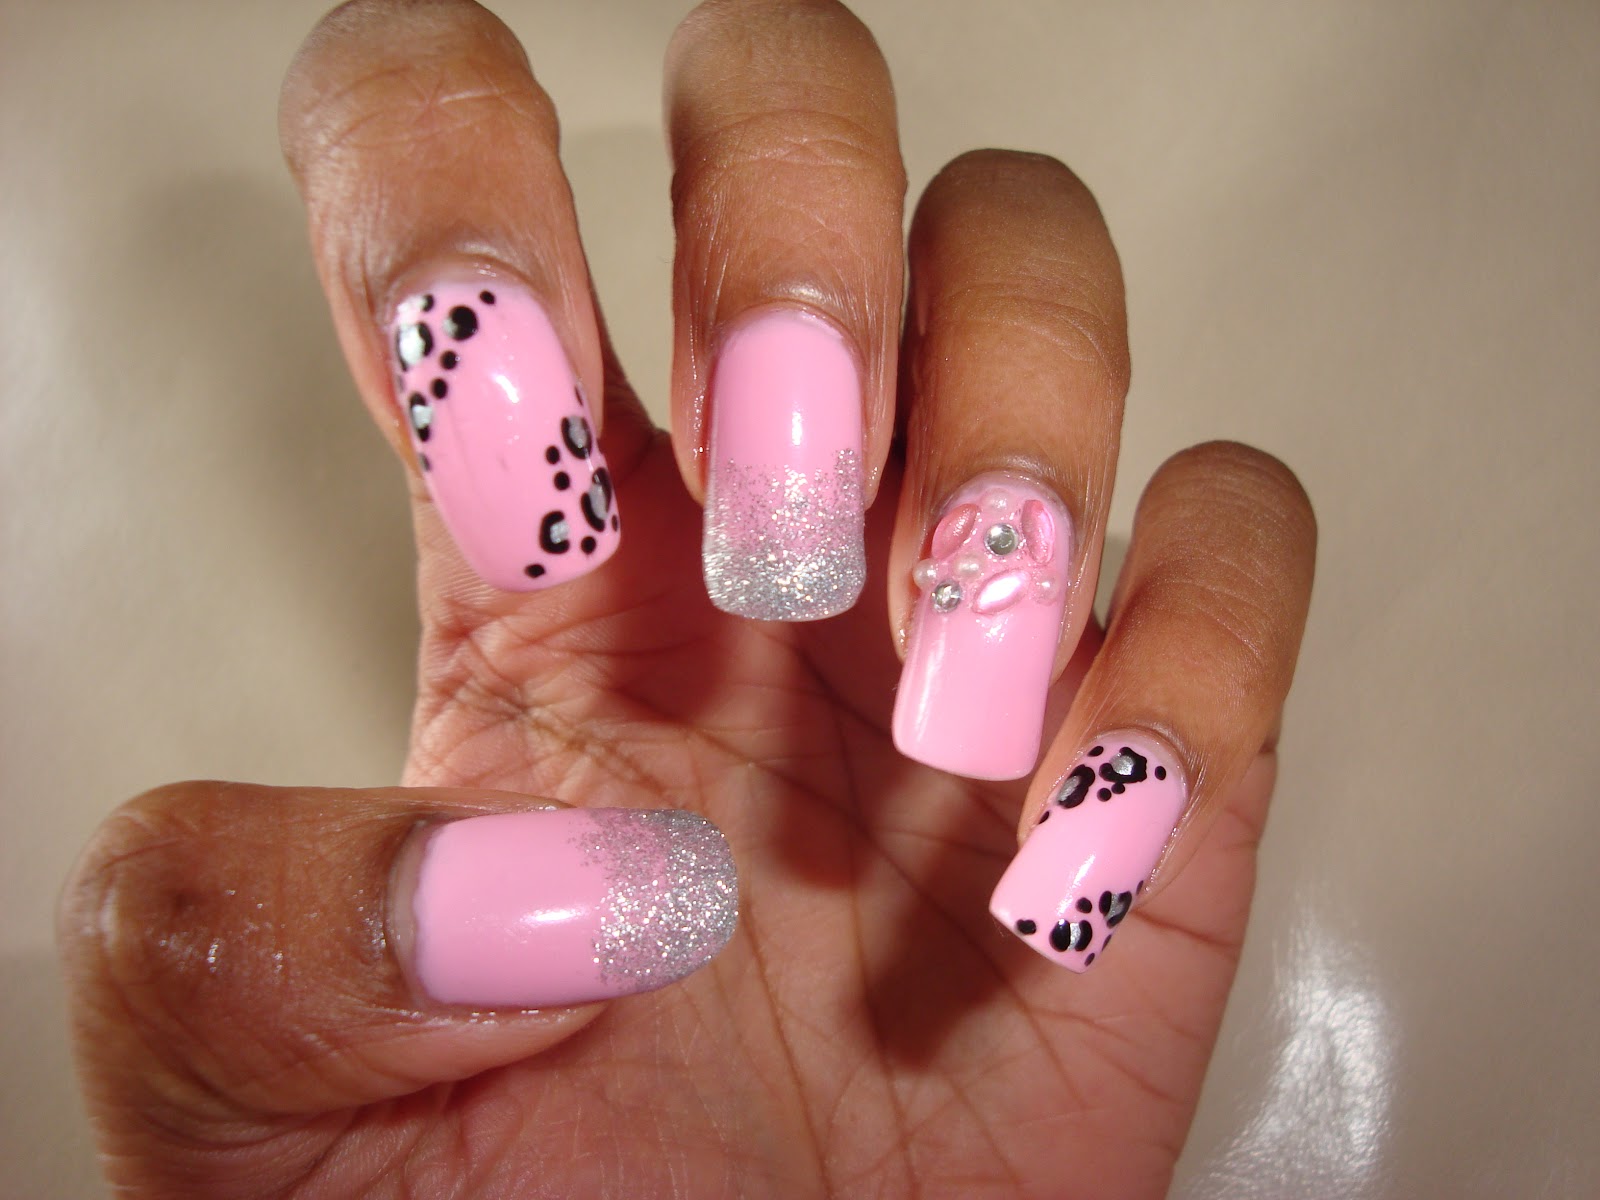 3. Pink Glitter Nail Art Design - wide 2